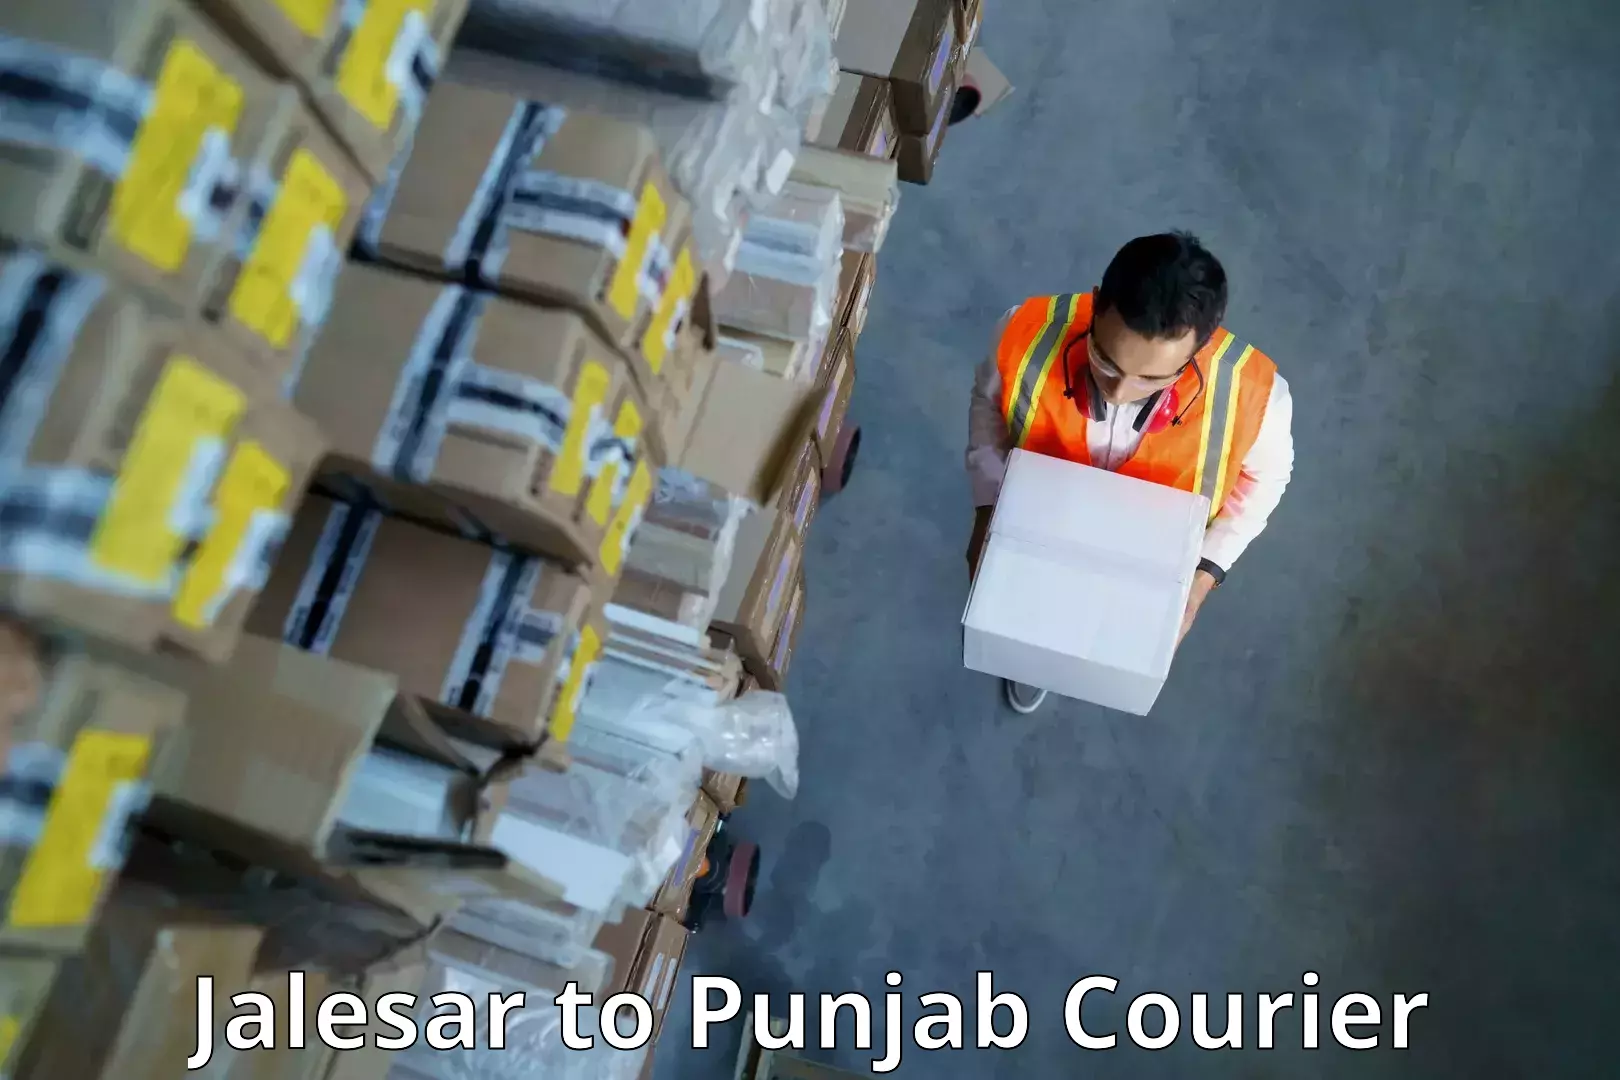 Comprehensive logistics in Jalesar to Jalandhar